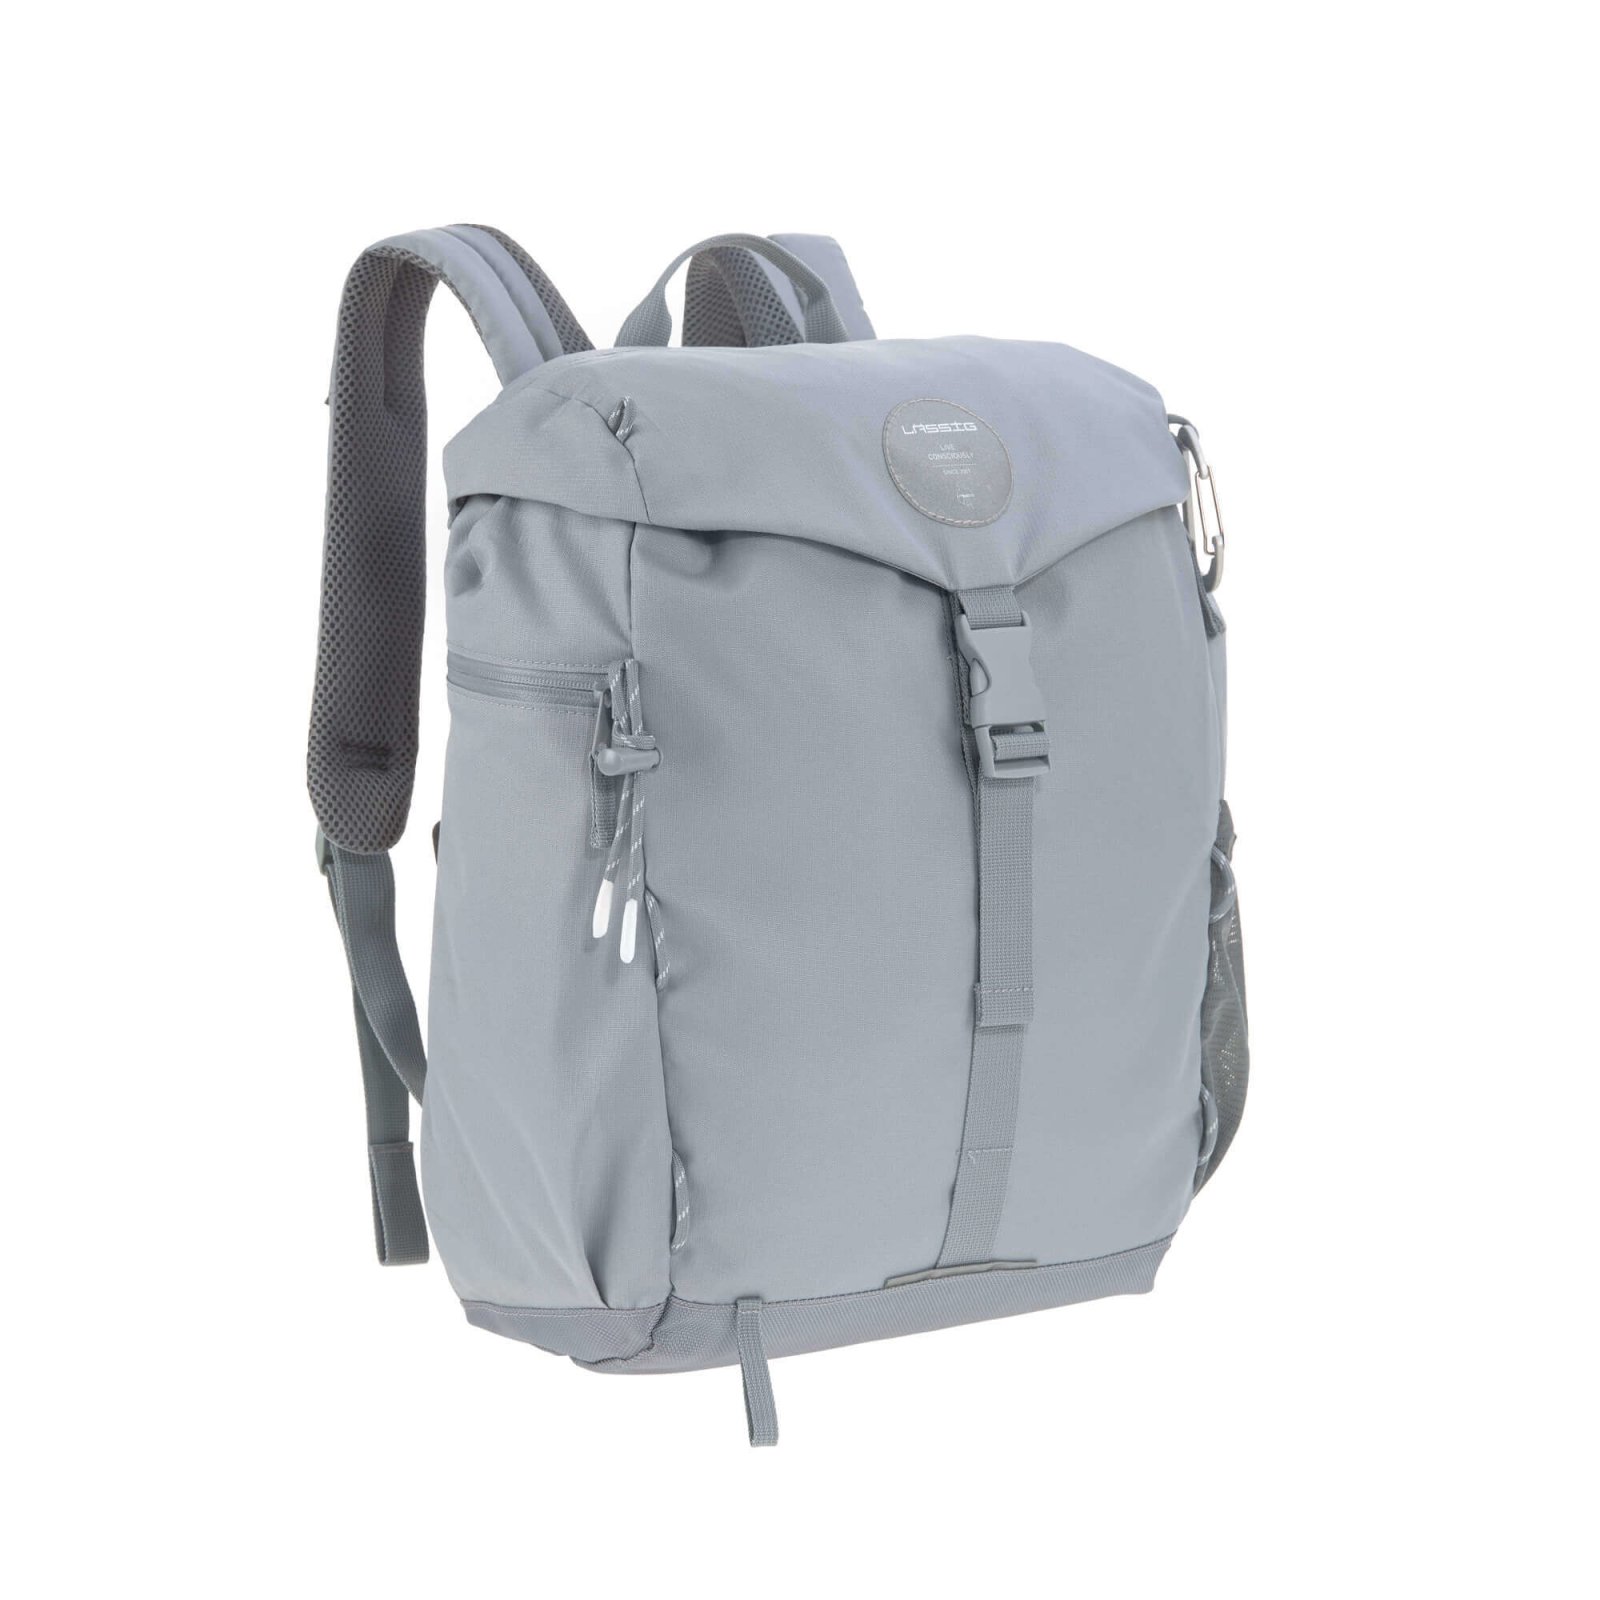 € - Lässig 124,99 Backpack, Wickelrucksack Outdoor - Grey,